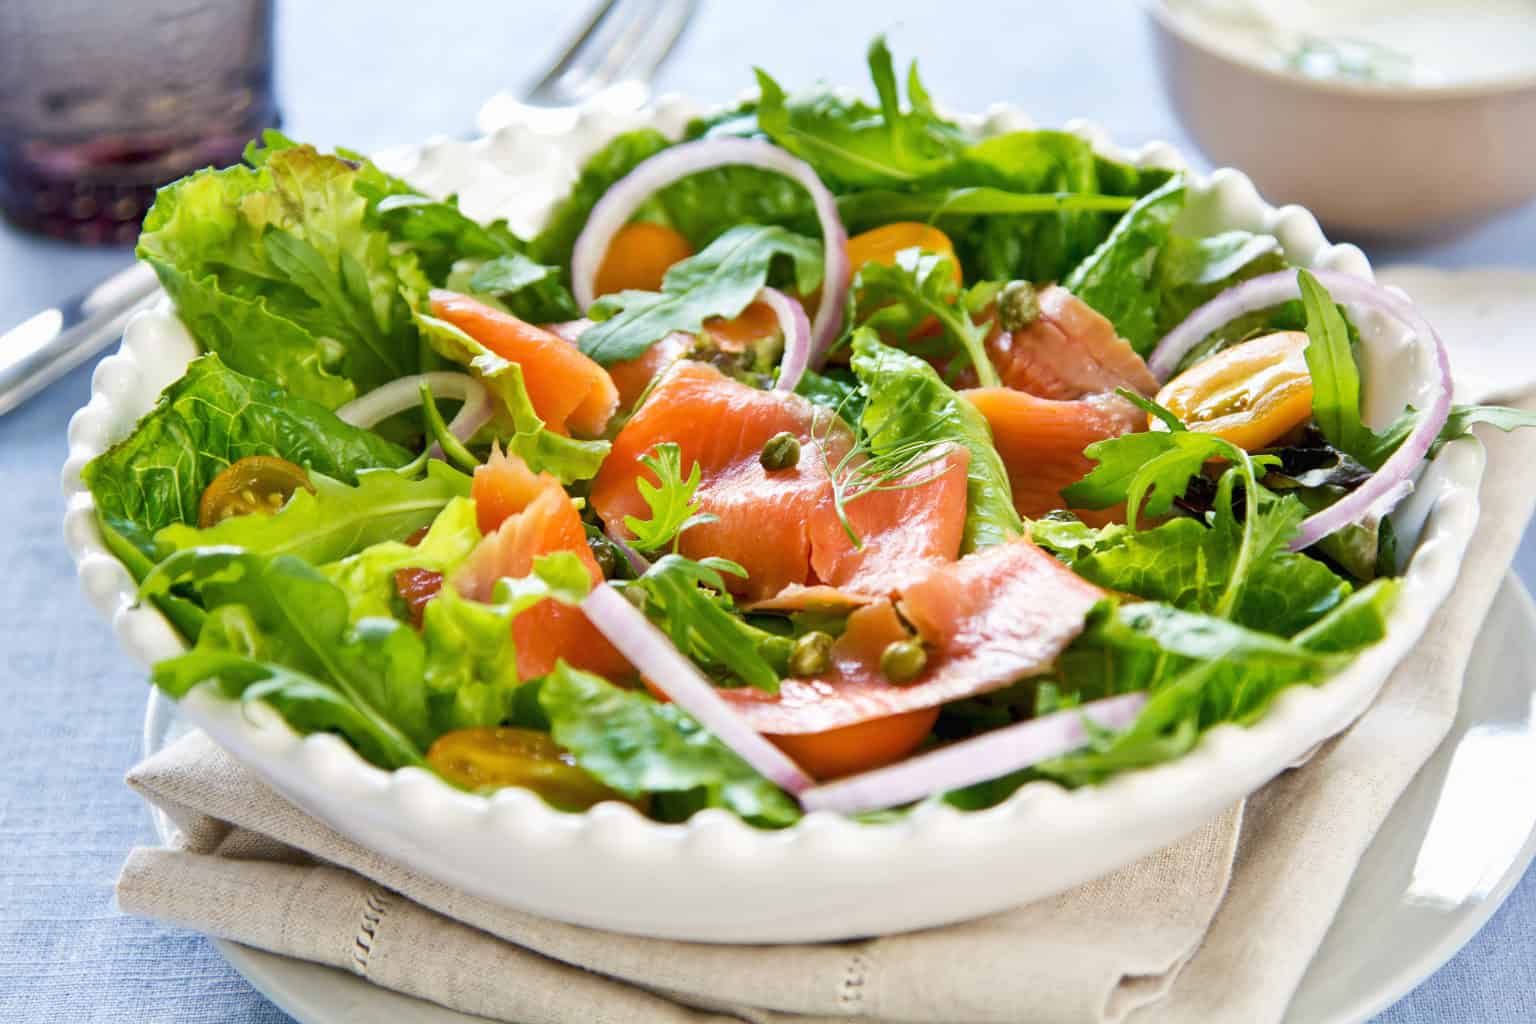 Salad cá hồi là sự kết hợp tuyệt vời giữa cá hồi và các loại rau củ